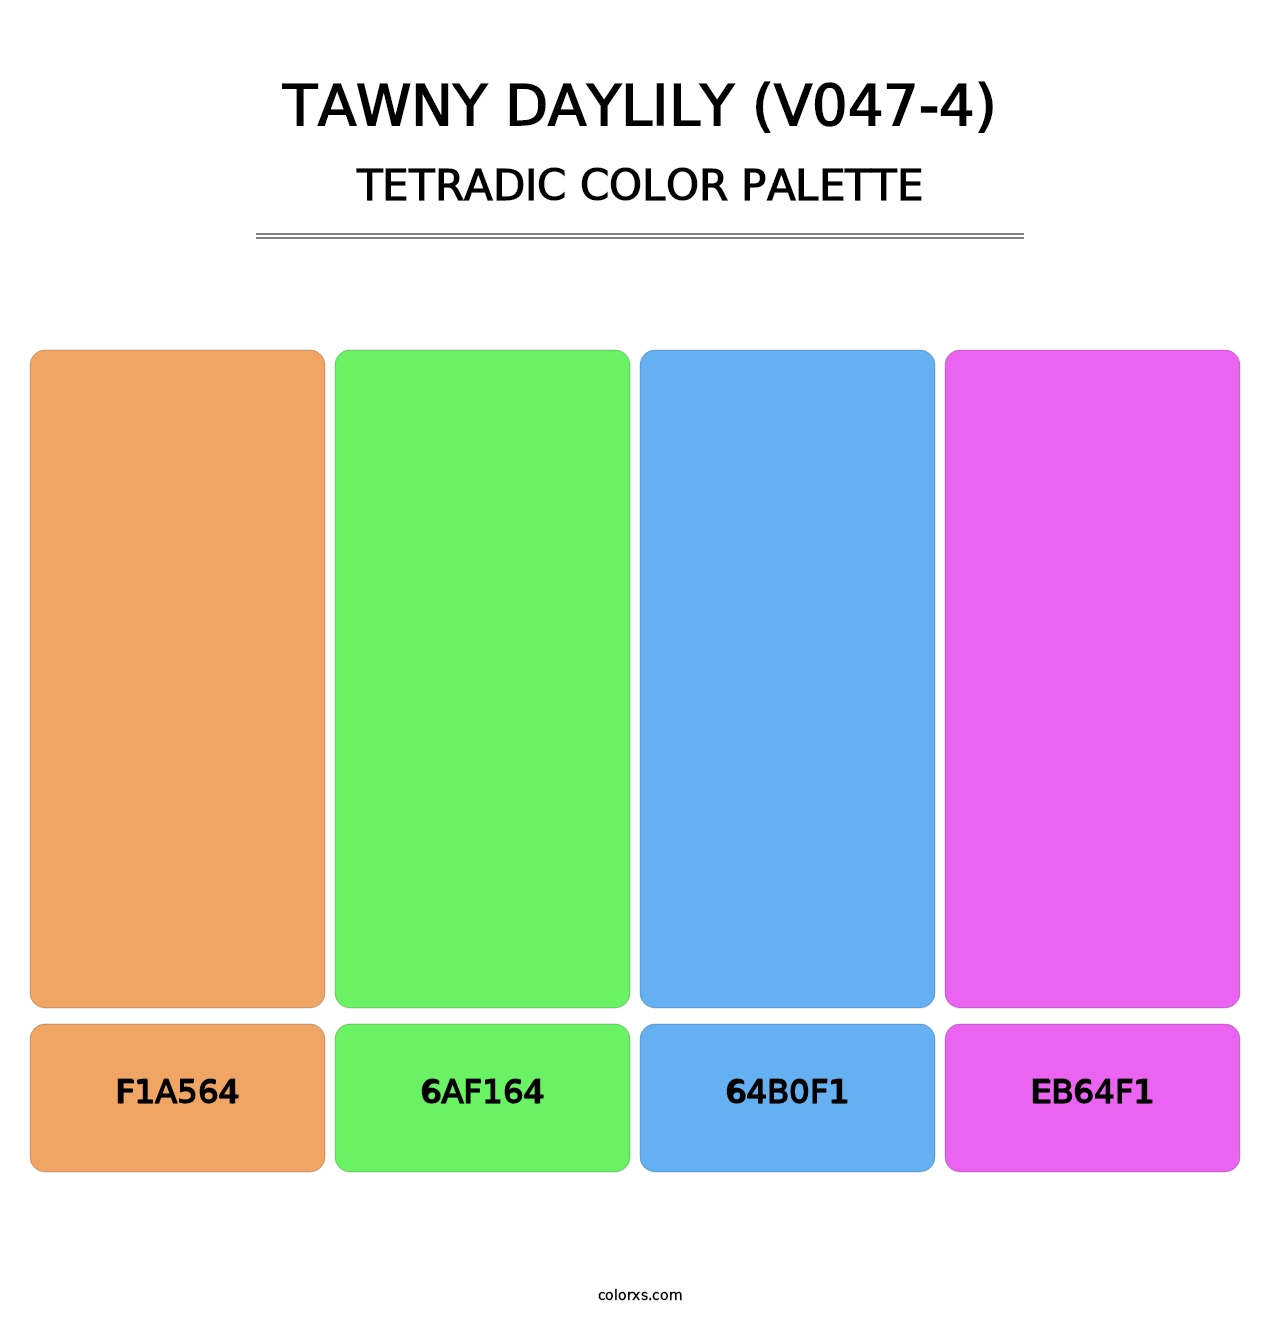 Tawny Daylily (V047-4) - Tetradic Color Palette